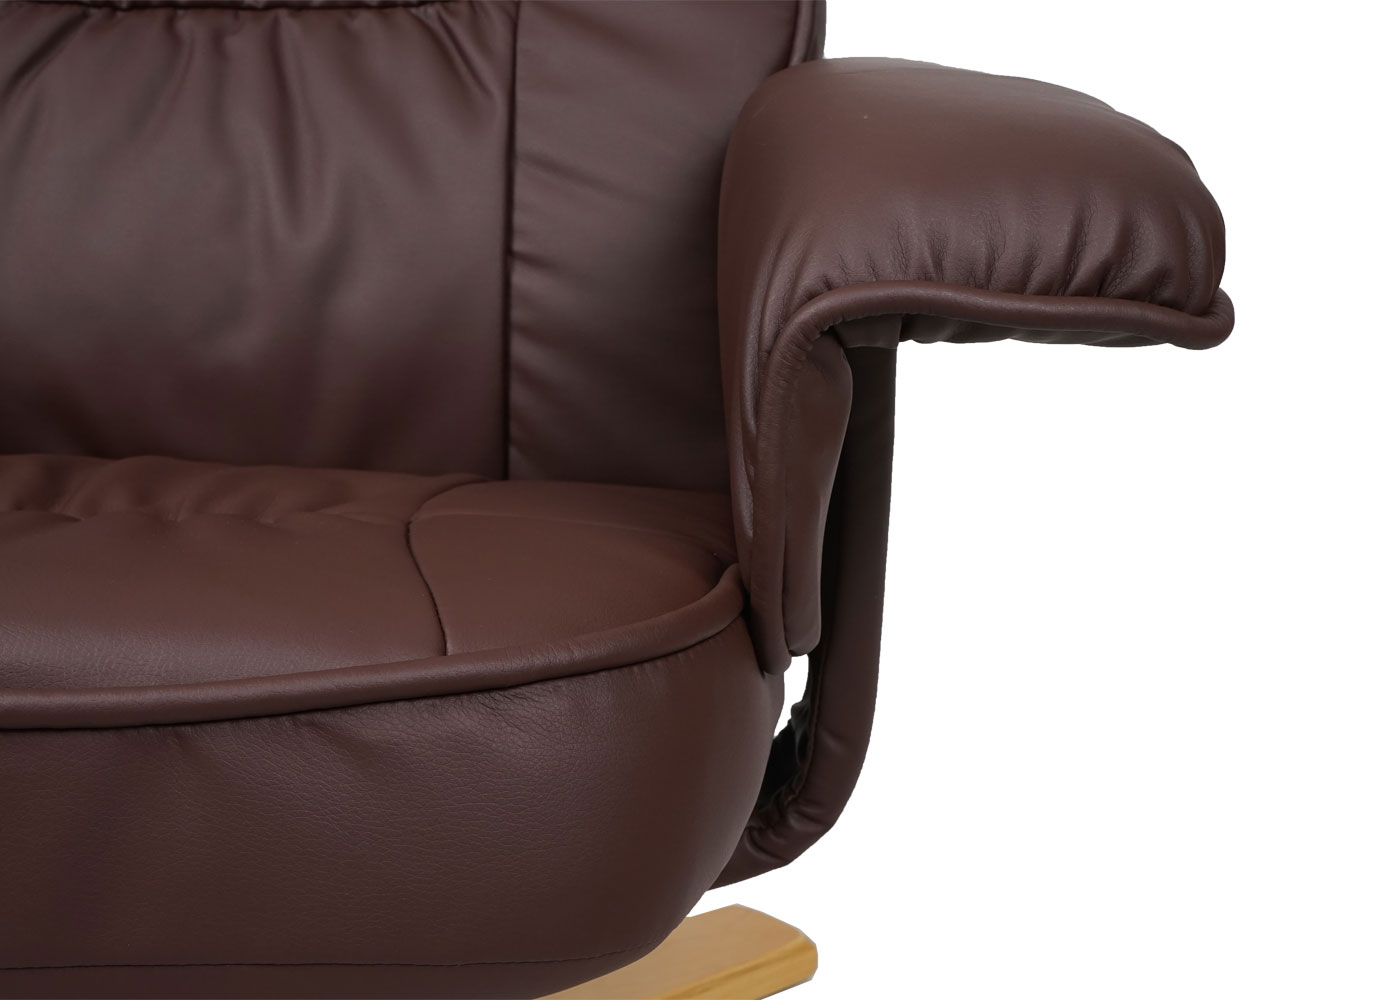 Relaxsessel M56 Detailansicht Armlehne und Sitzfläche